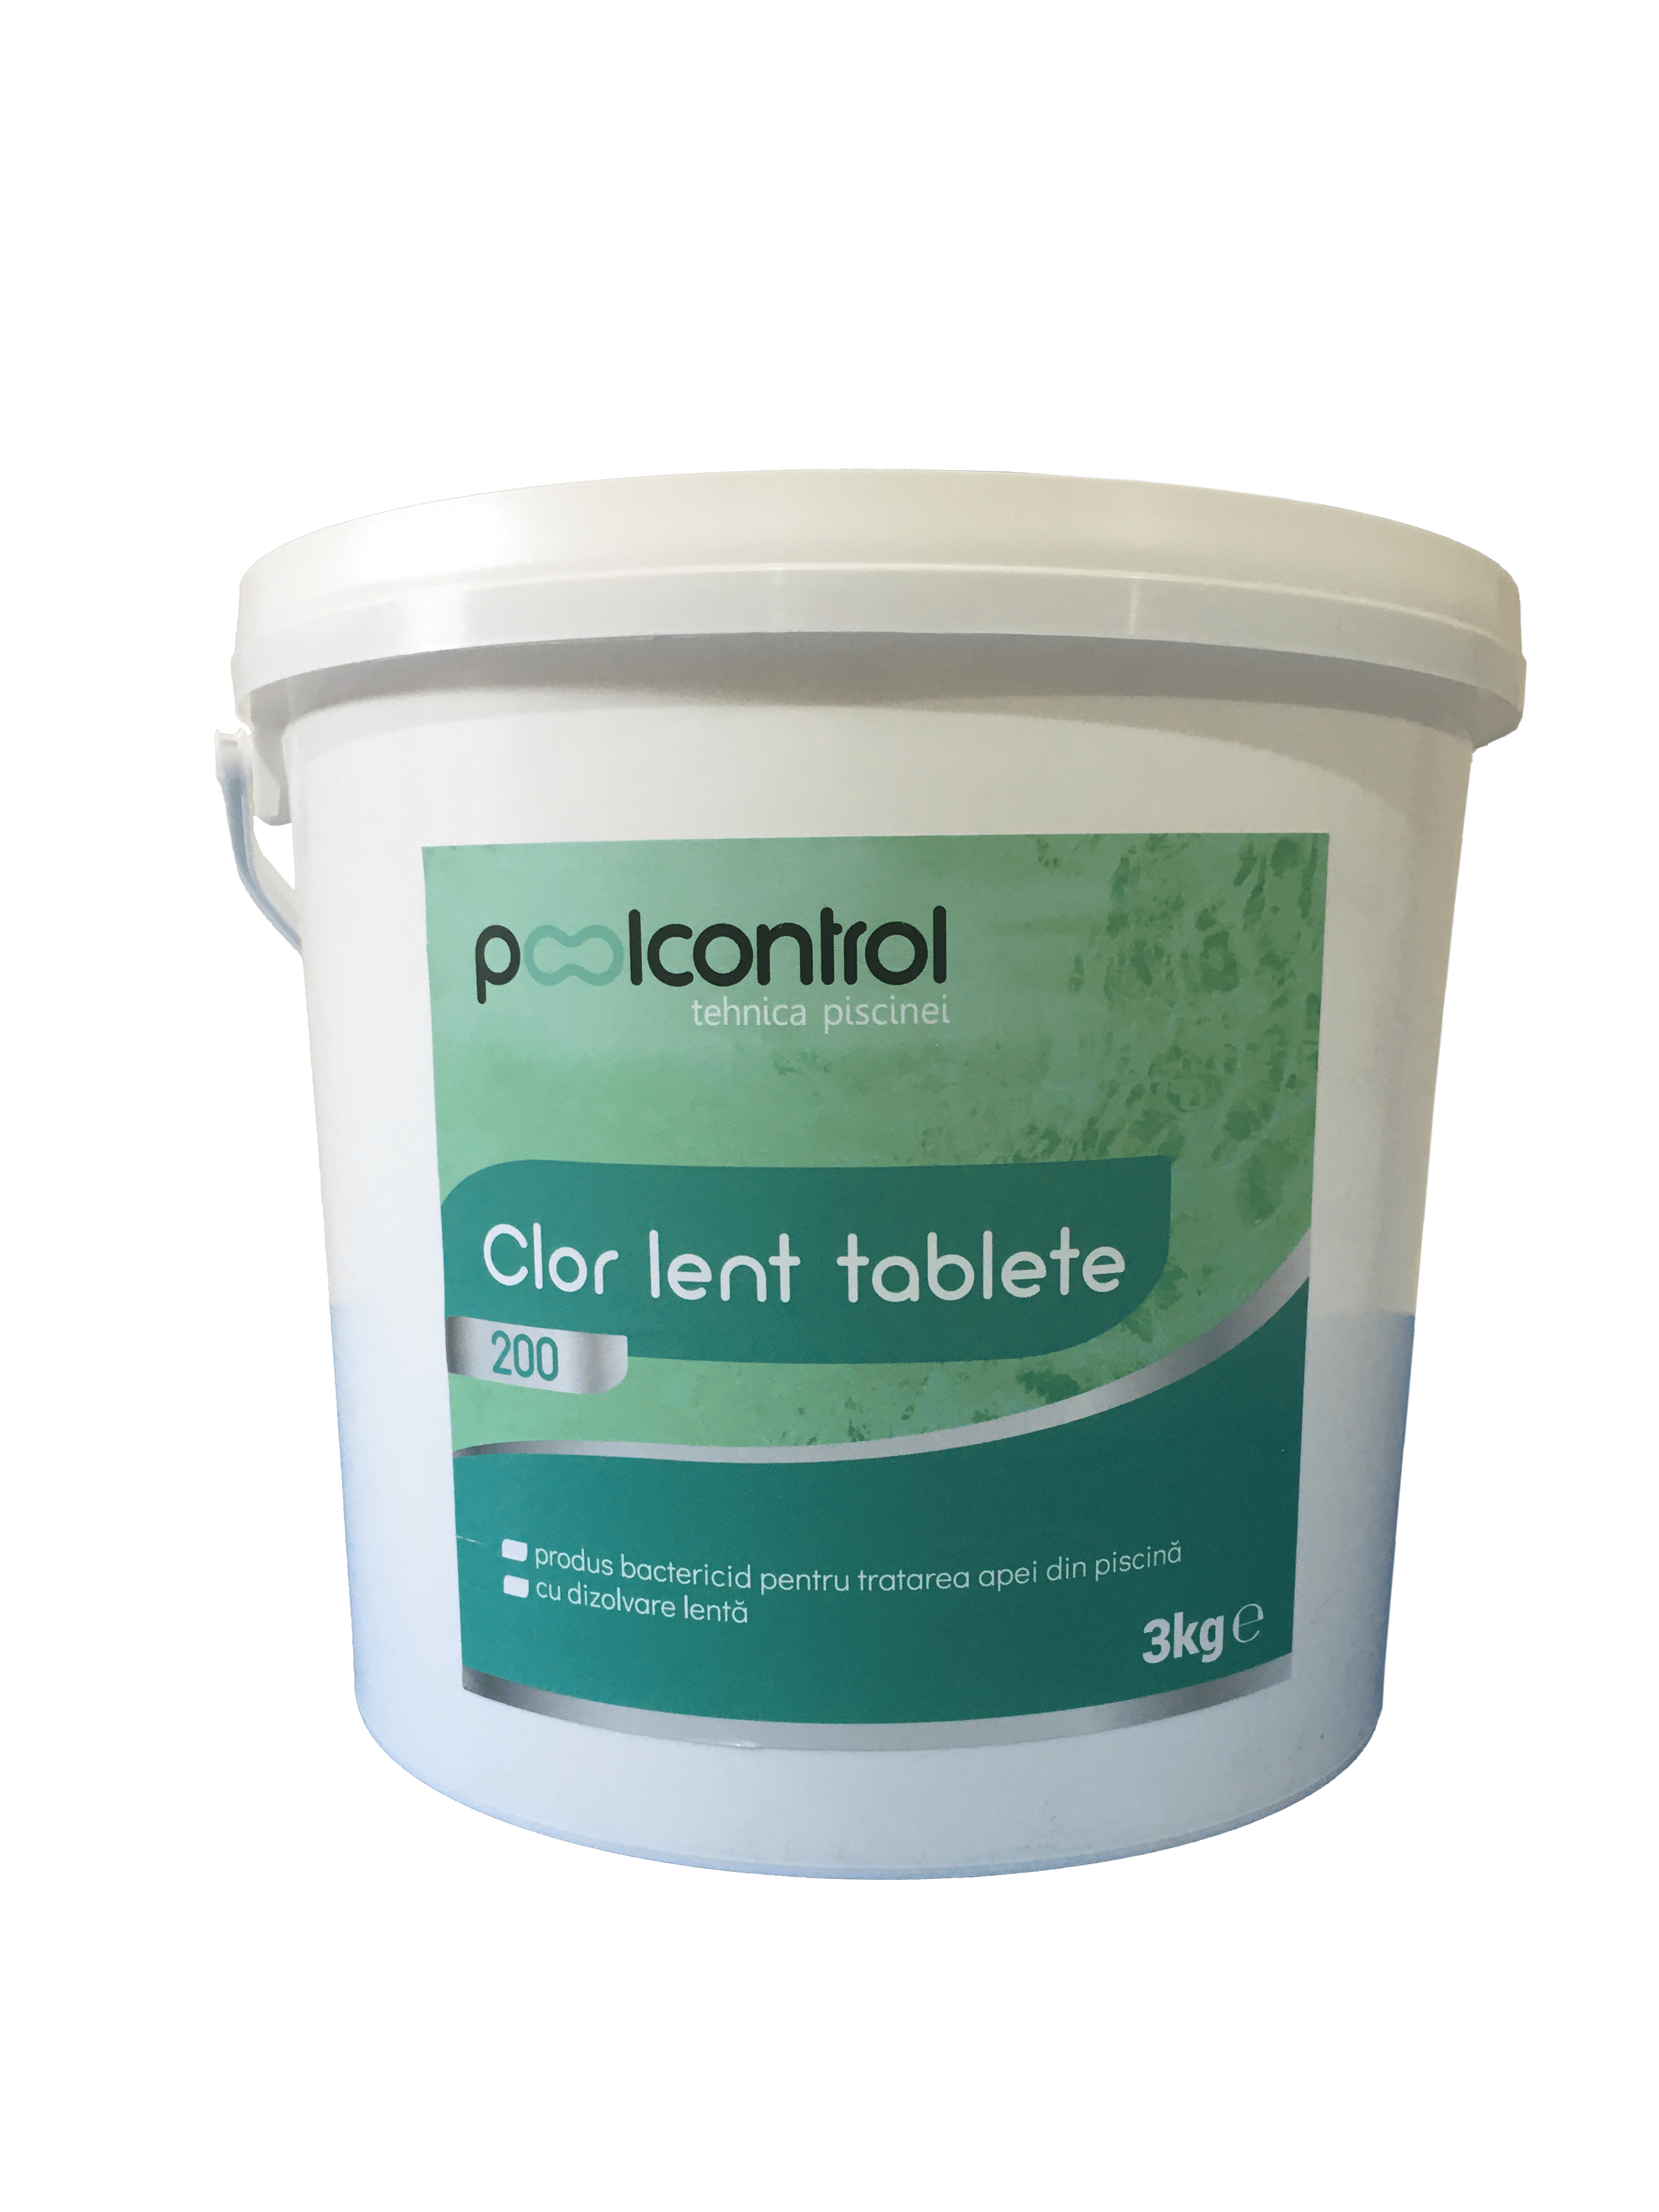 clor lent tablete